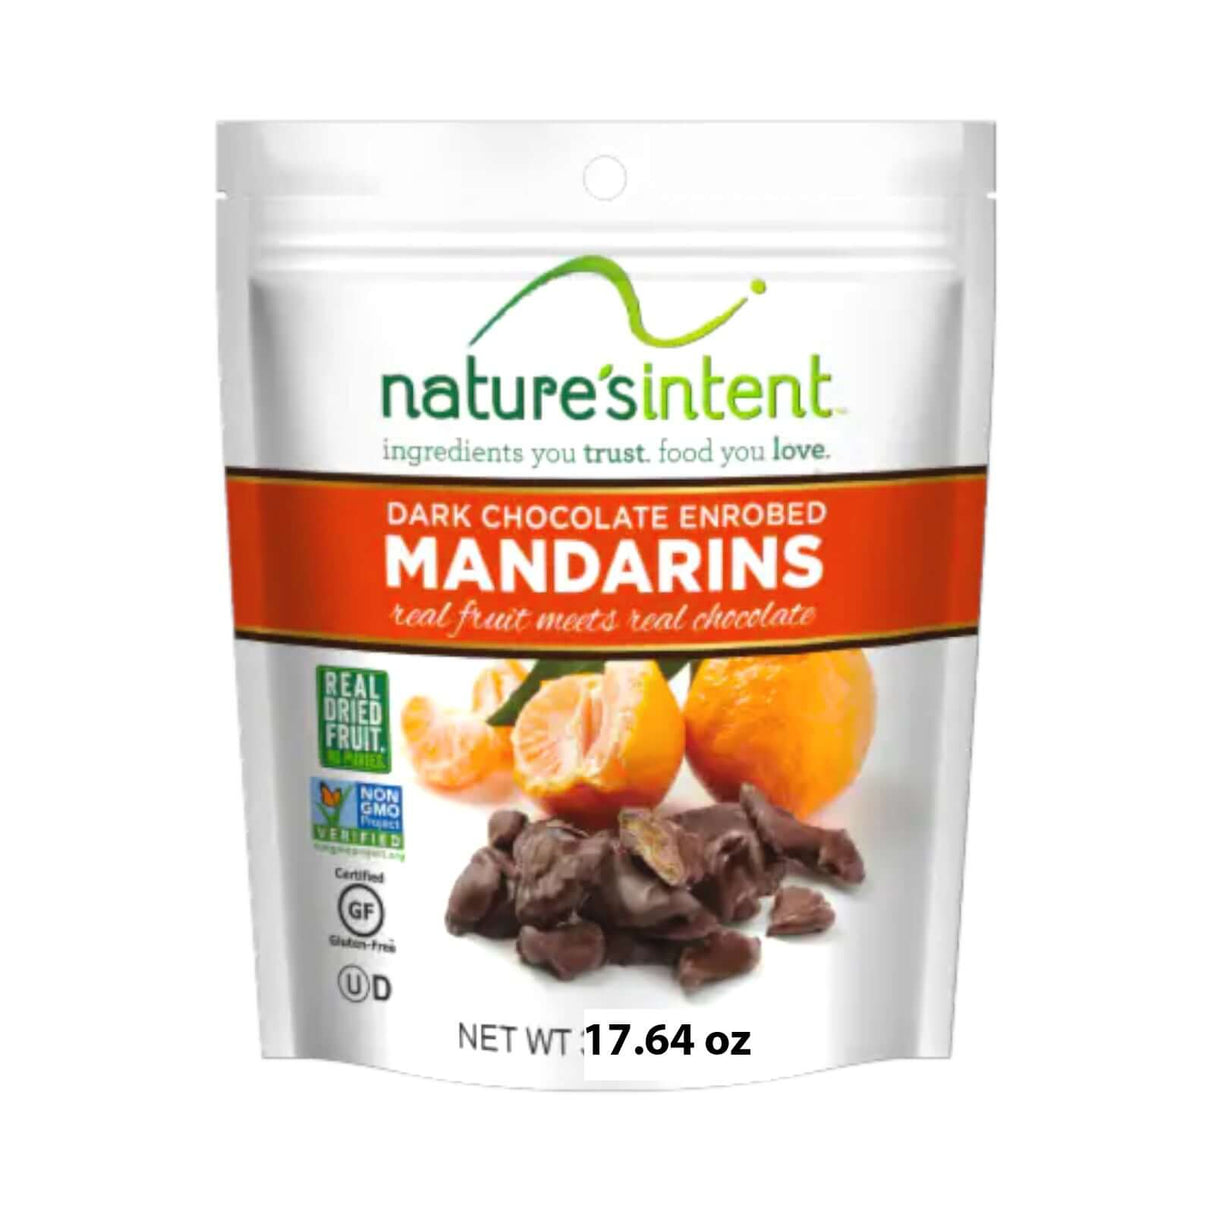 Nature's Intent Dark Chocolate Mandarins